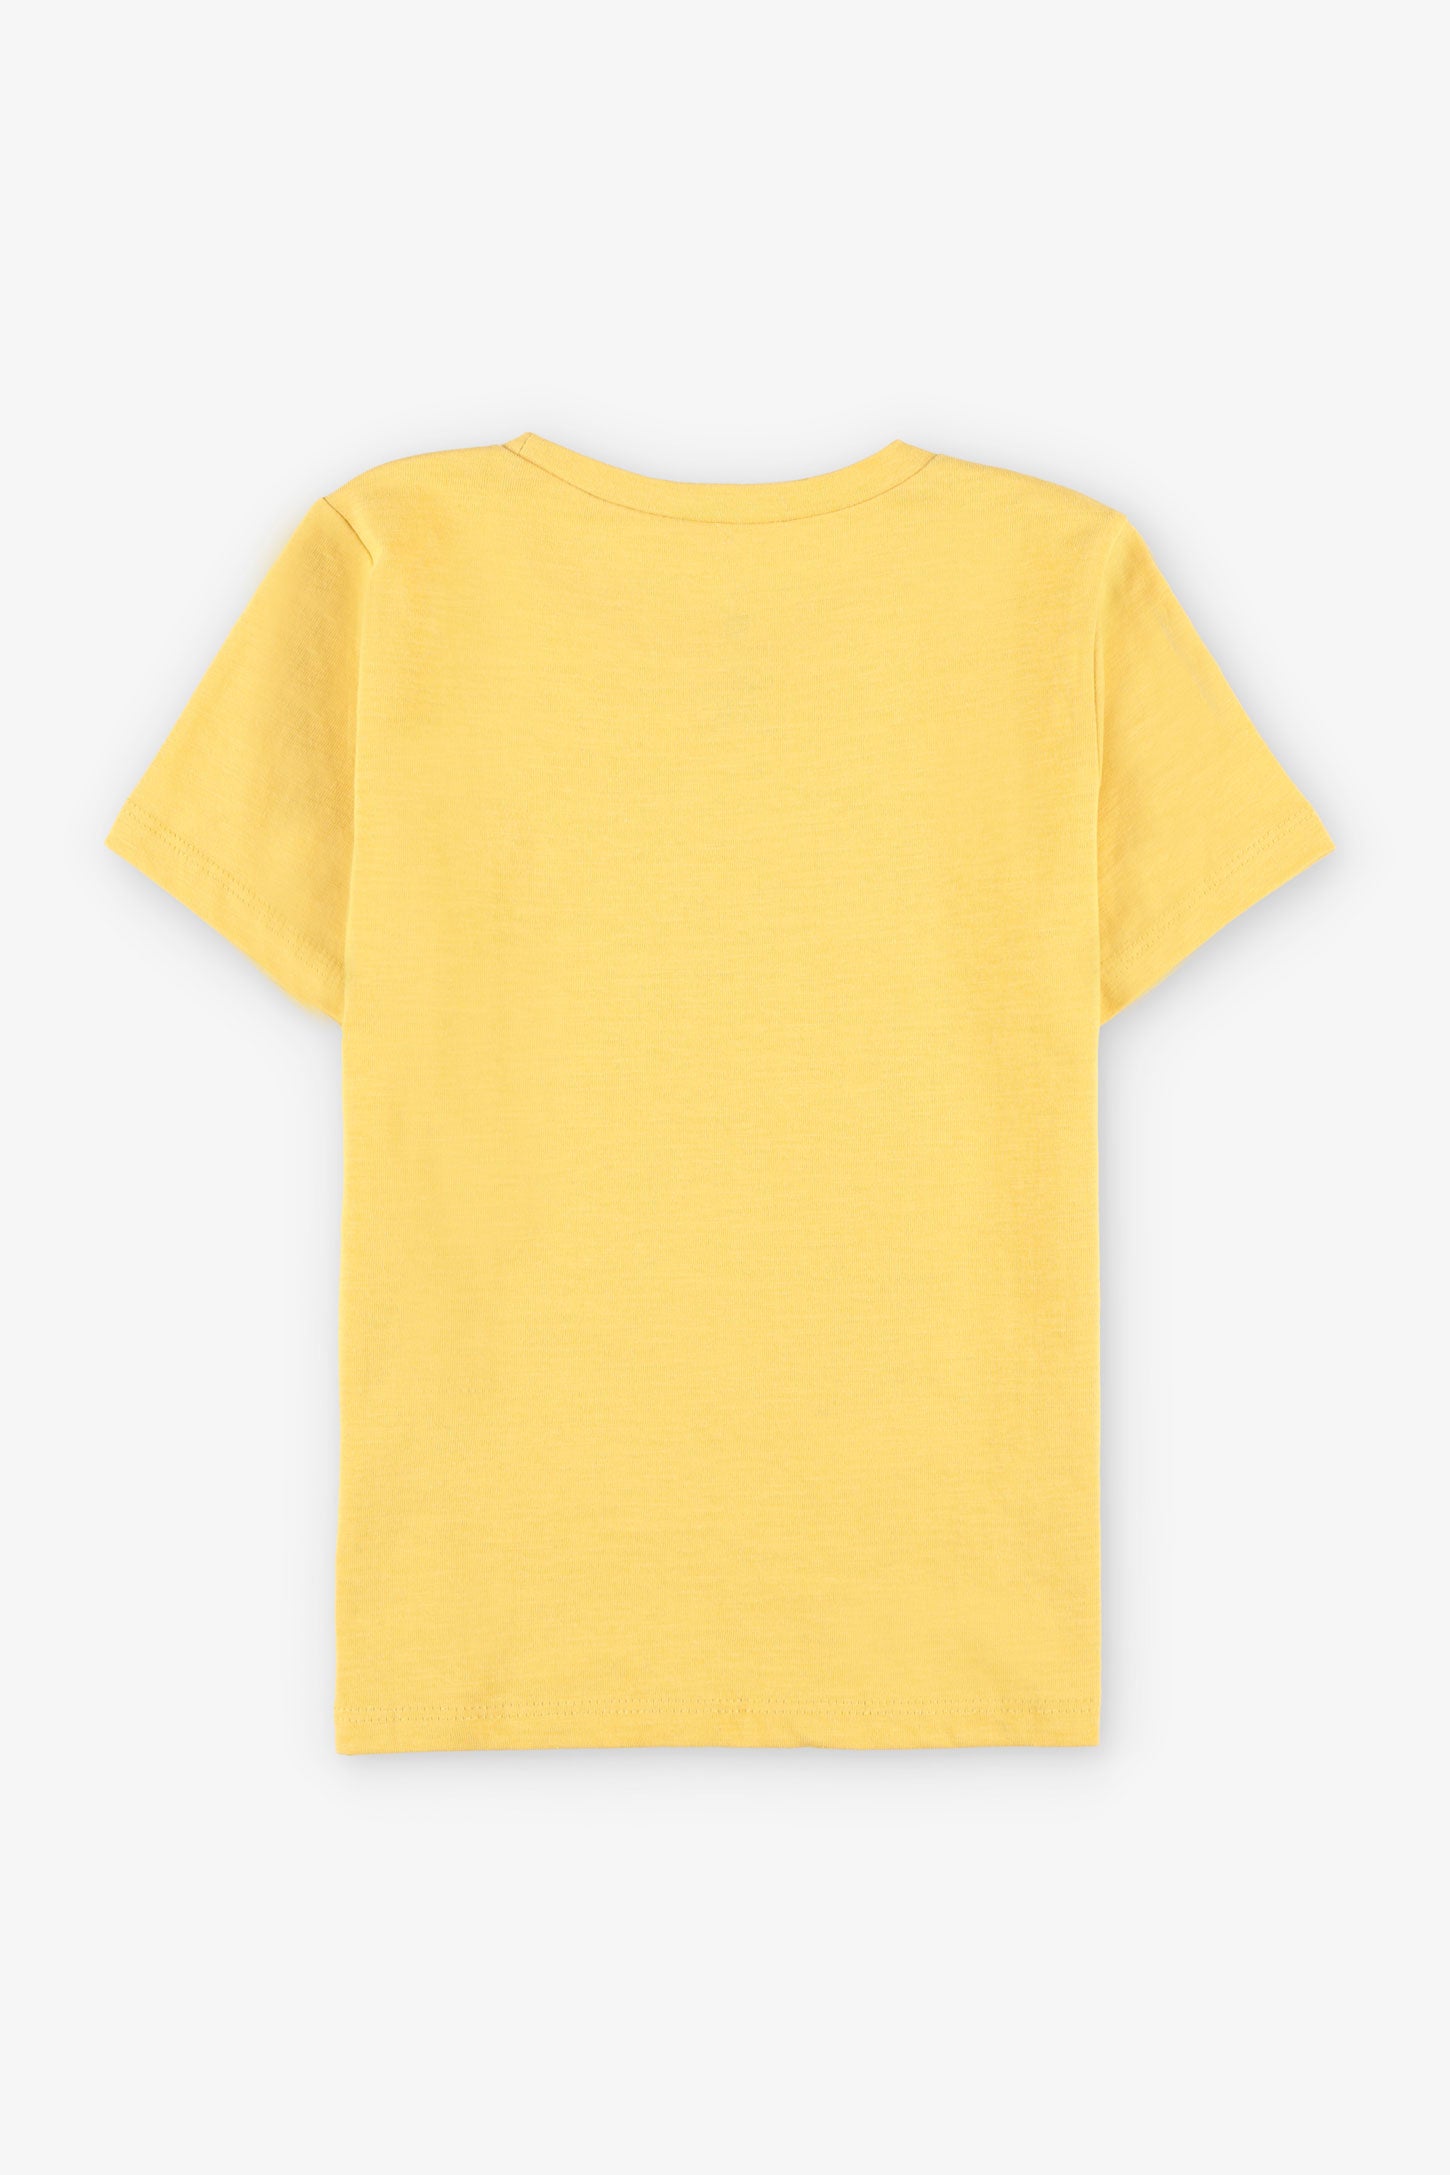 T-shirt col rond imprimé, 2/20$ - Enfant garçon && JAUNE